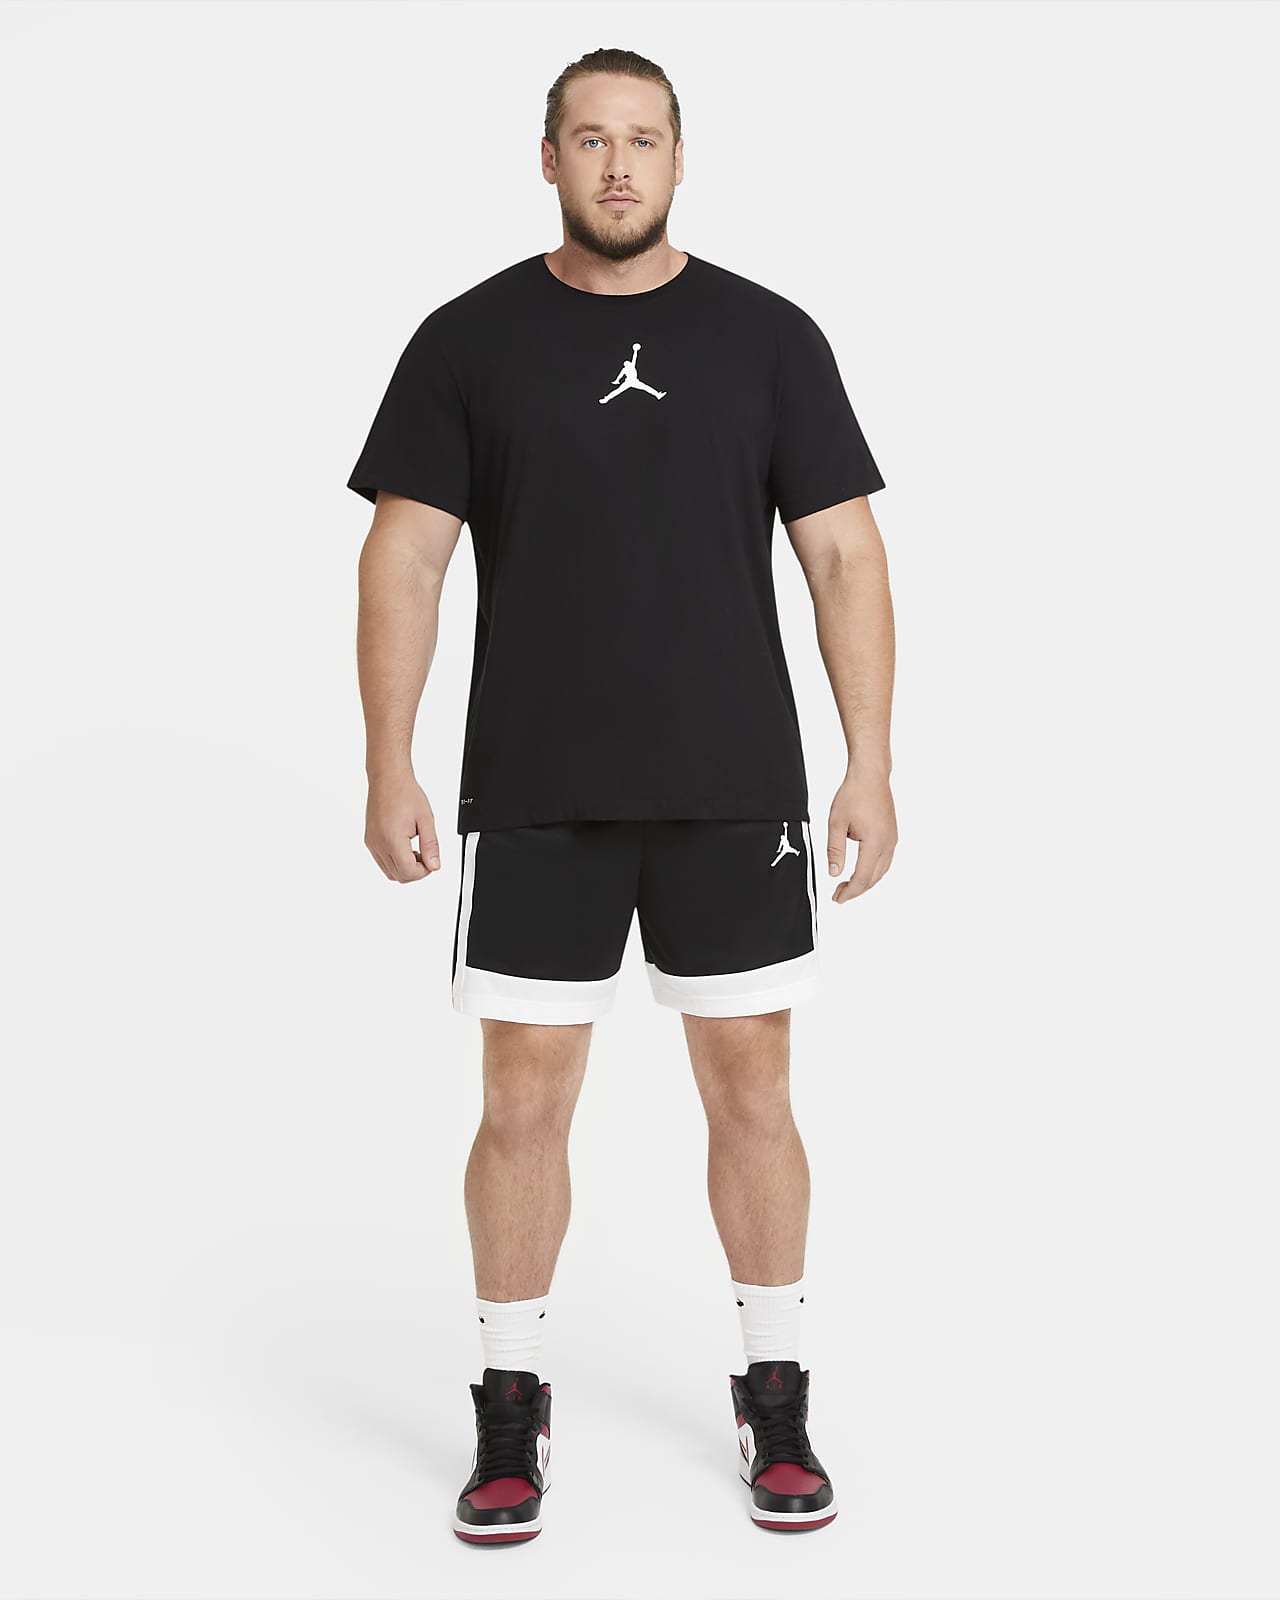 nike on court basketball shorts